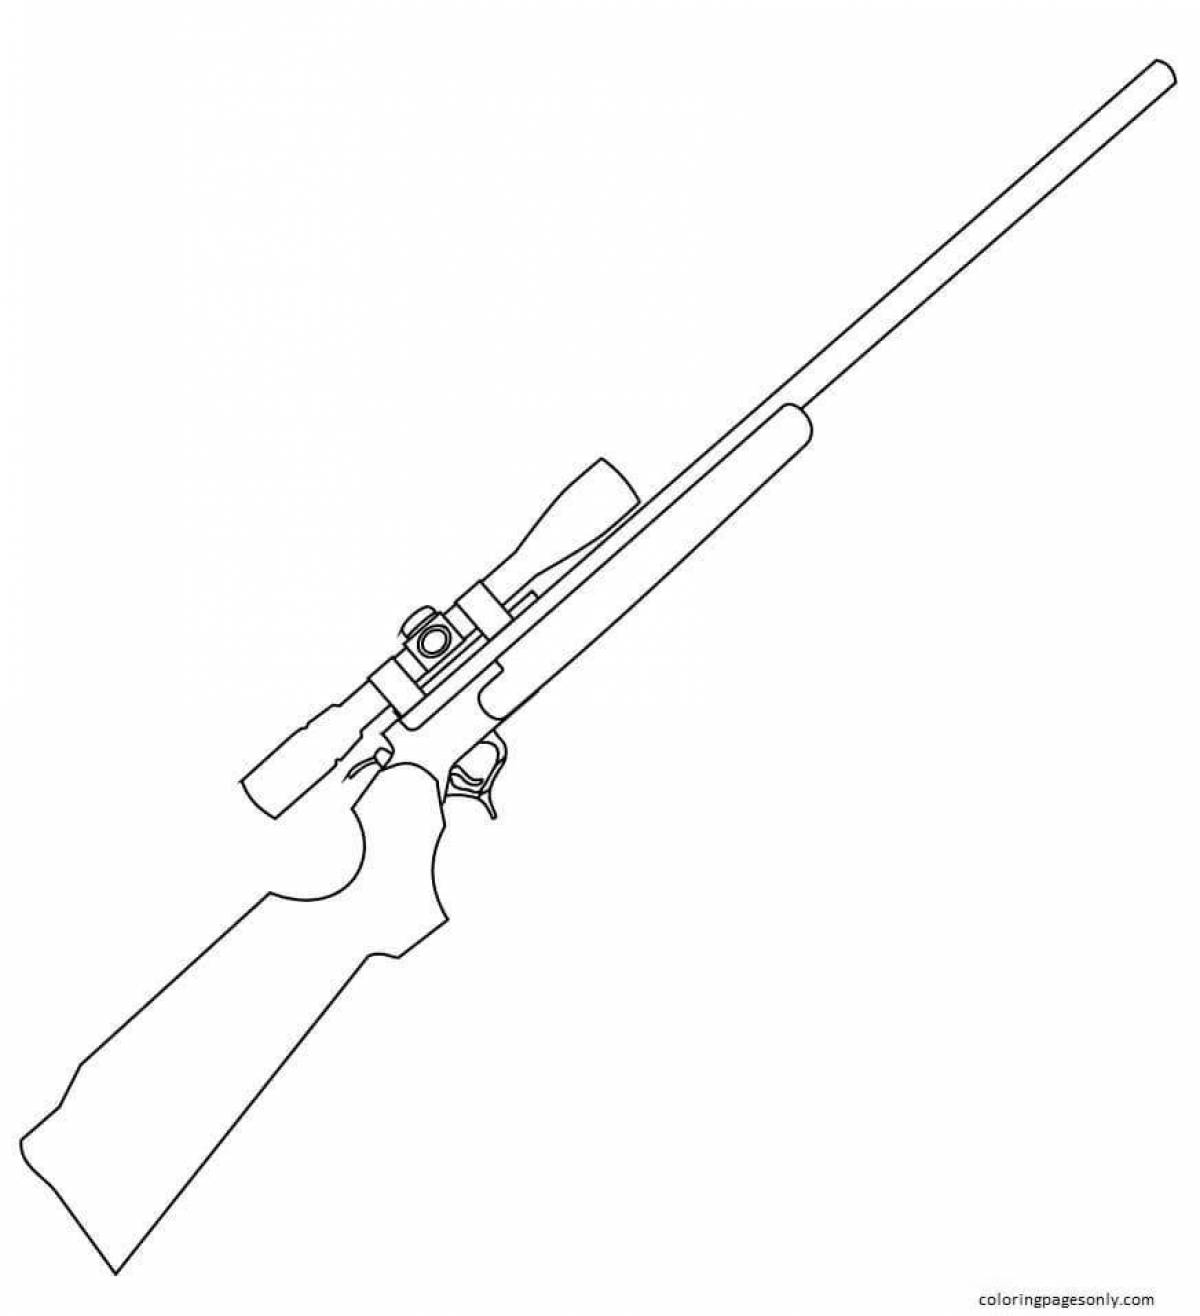 Children's rifle #20